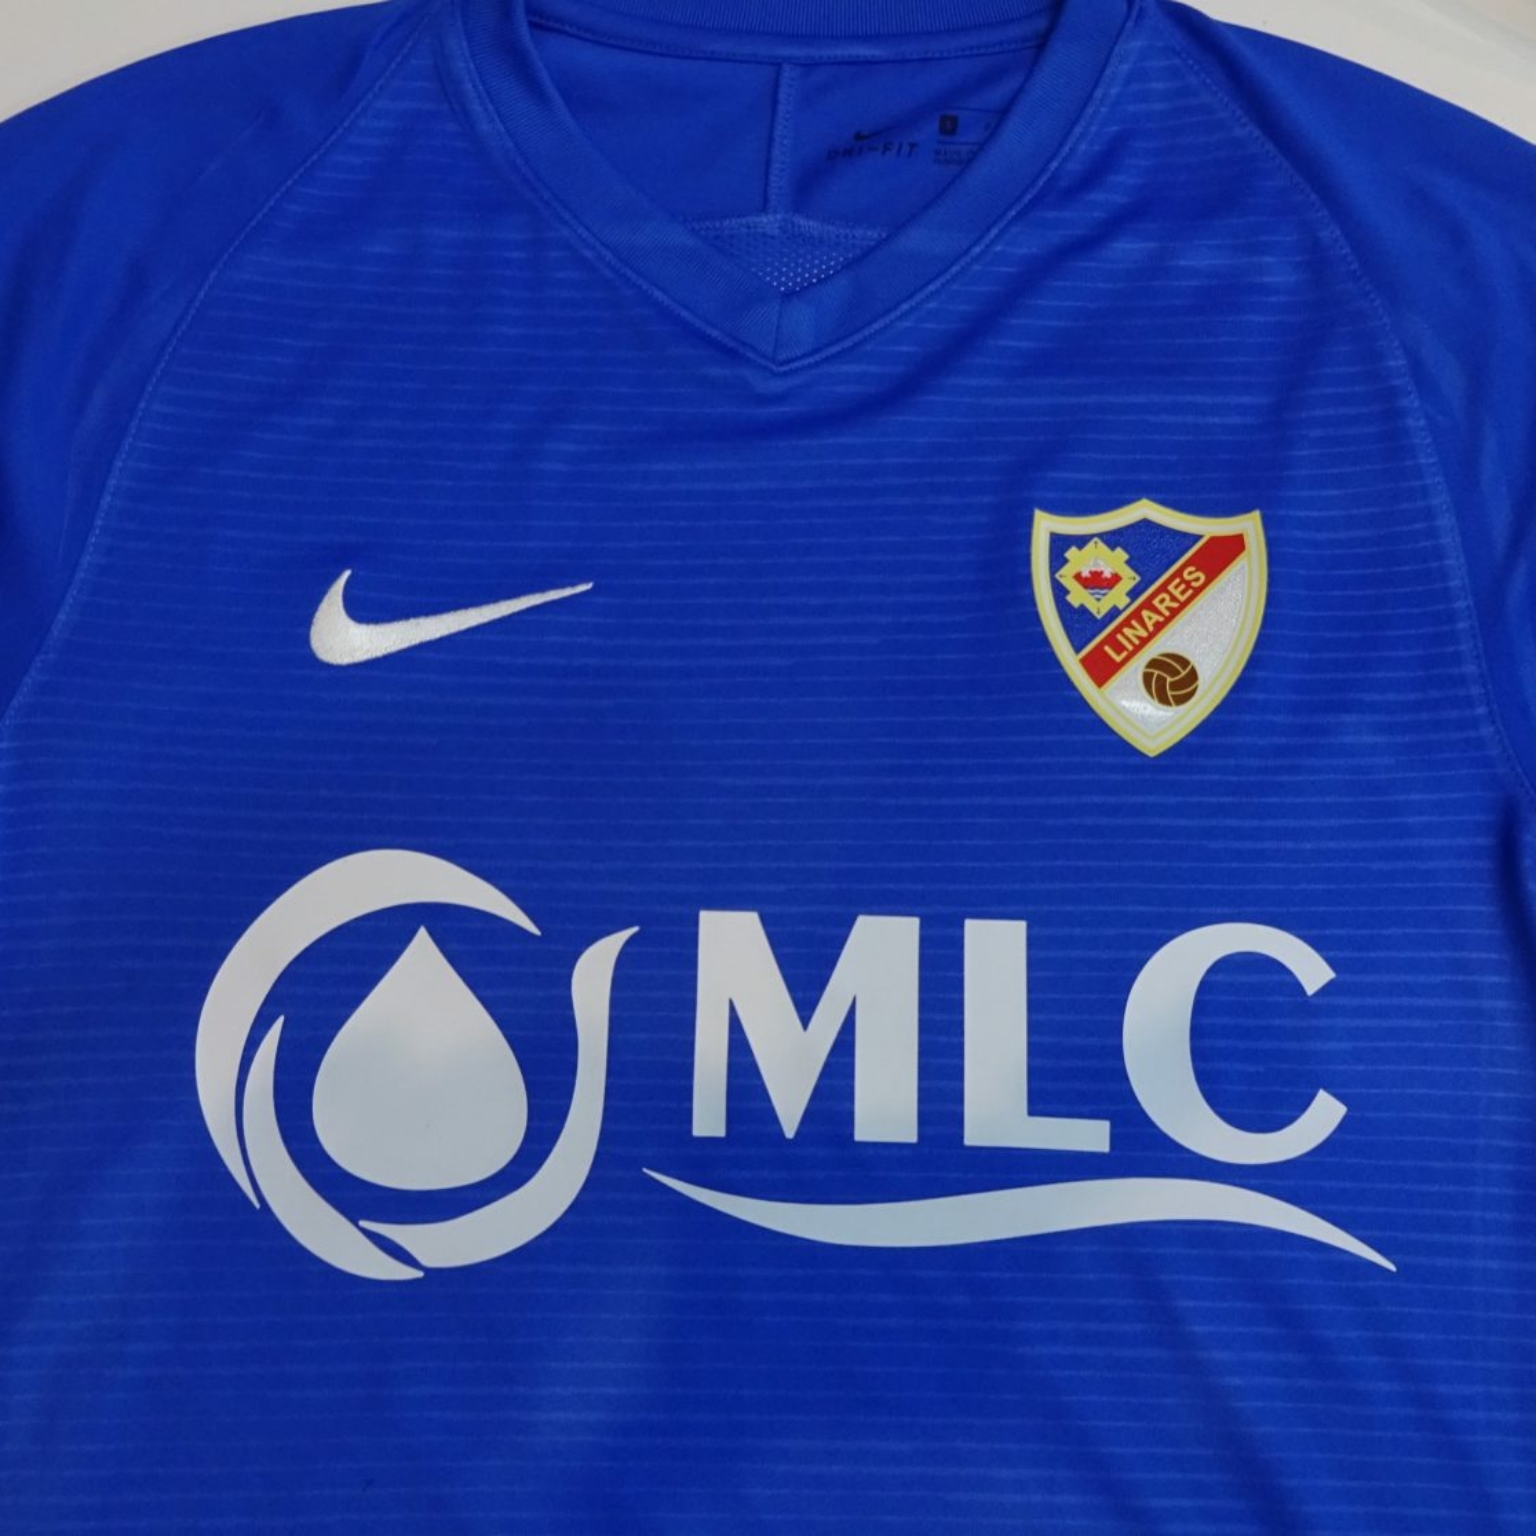 Nueva-camiseta-del-Linares-Dptvo-con-MLC-1536x1115